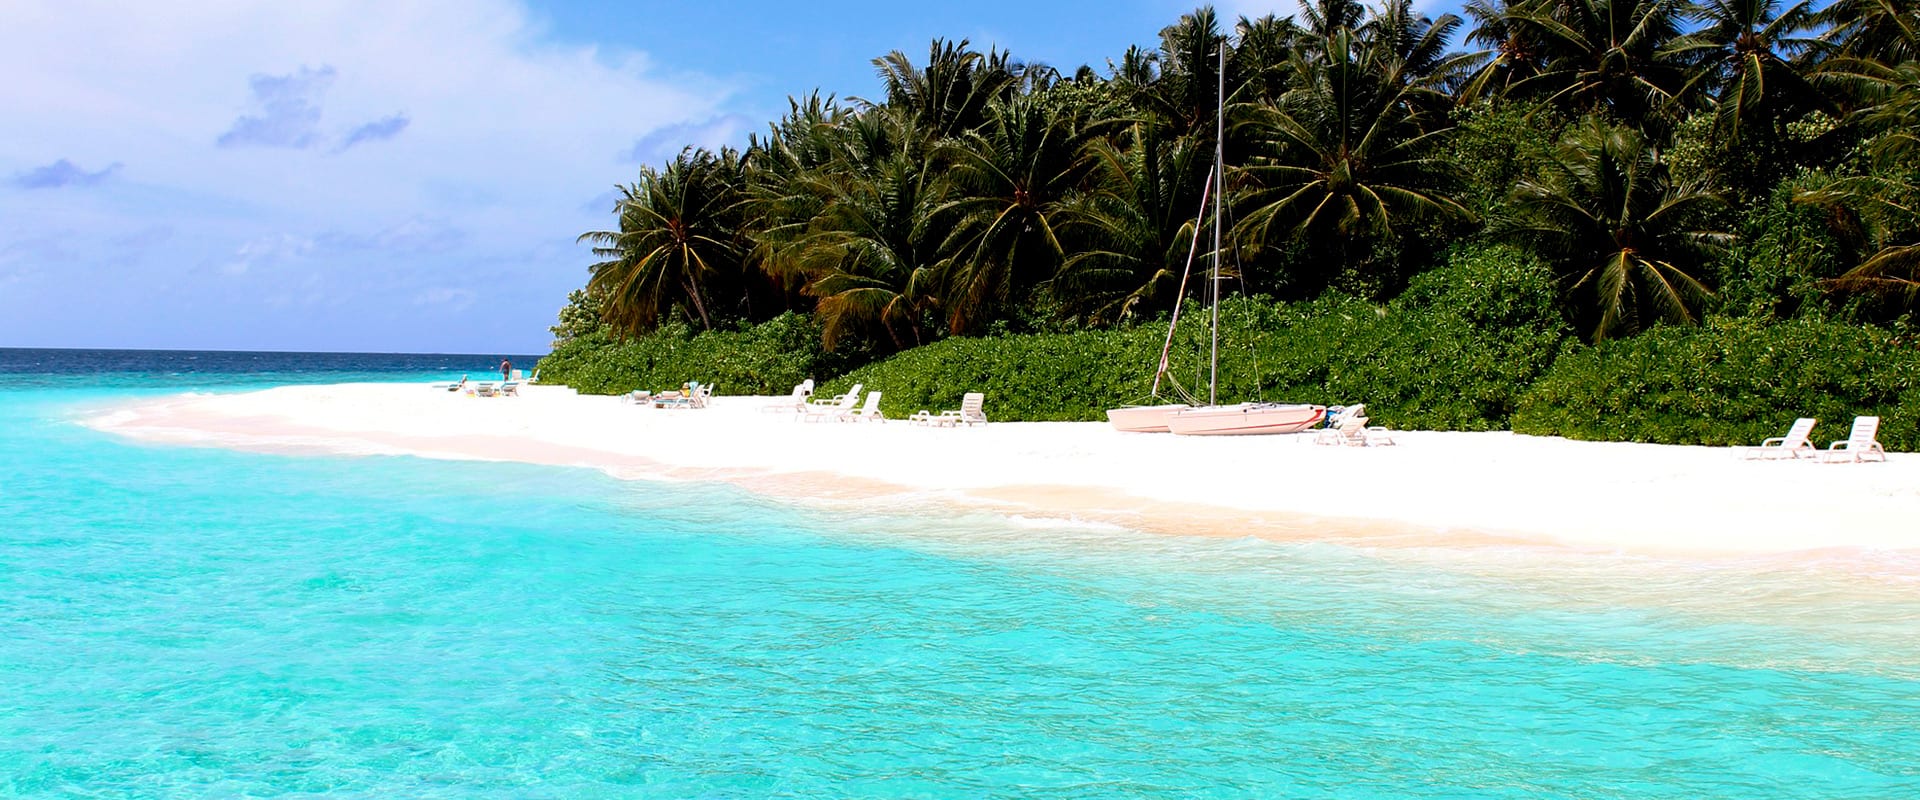 7 Dicas para planejar uma viagem para as Maldivas